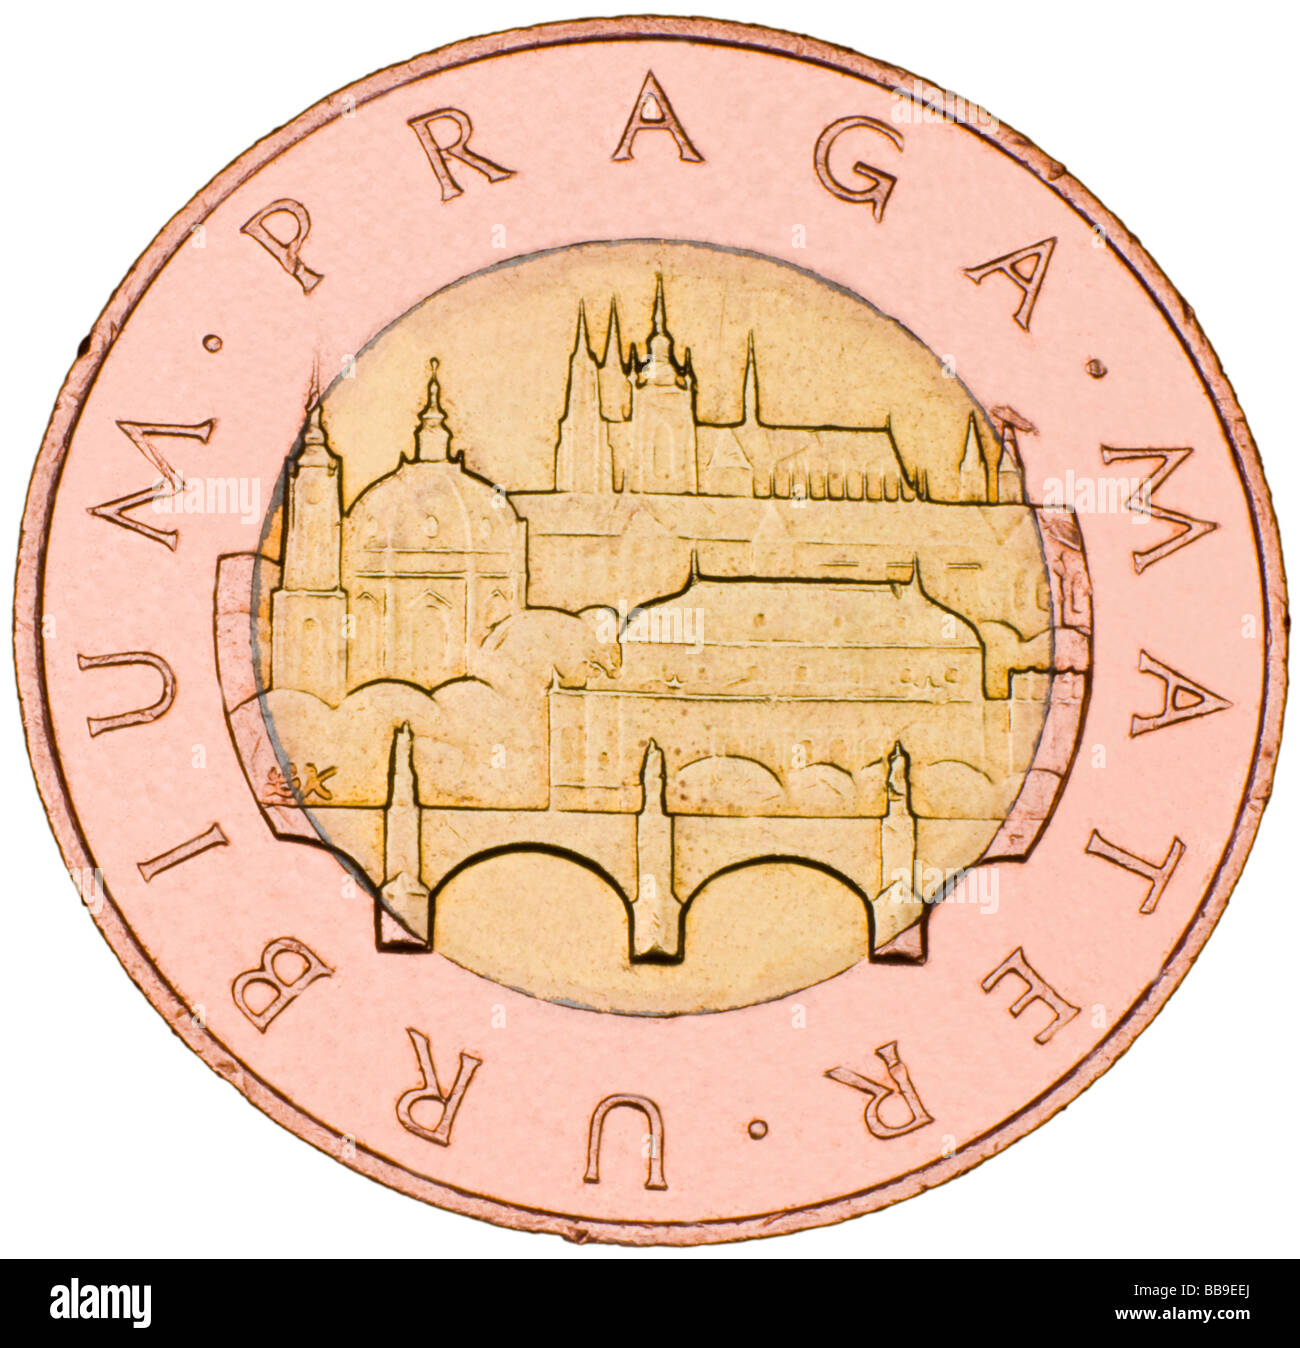 République tchèque 50Kc coin 1993 bimétallique Banque D'Images